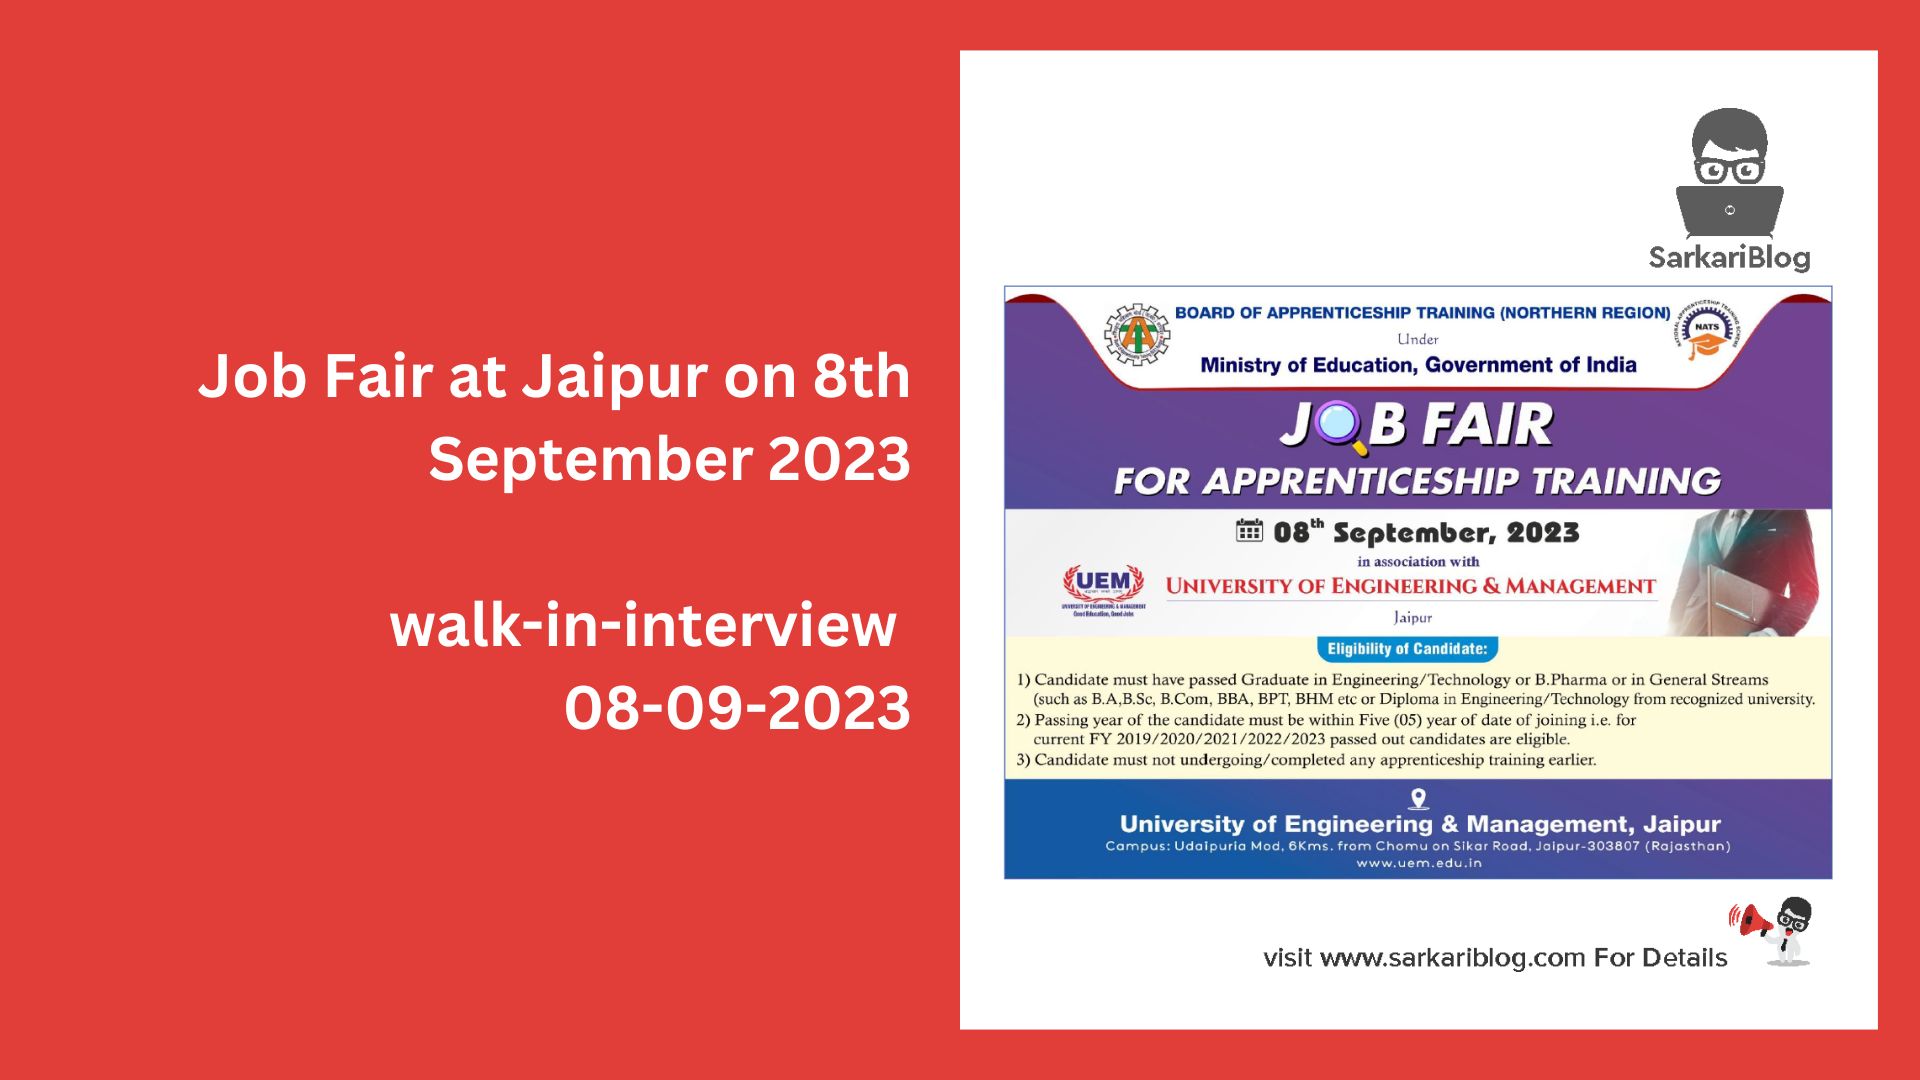 Job Fair at Jaipur on 8th September 2023